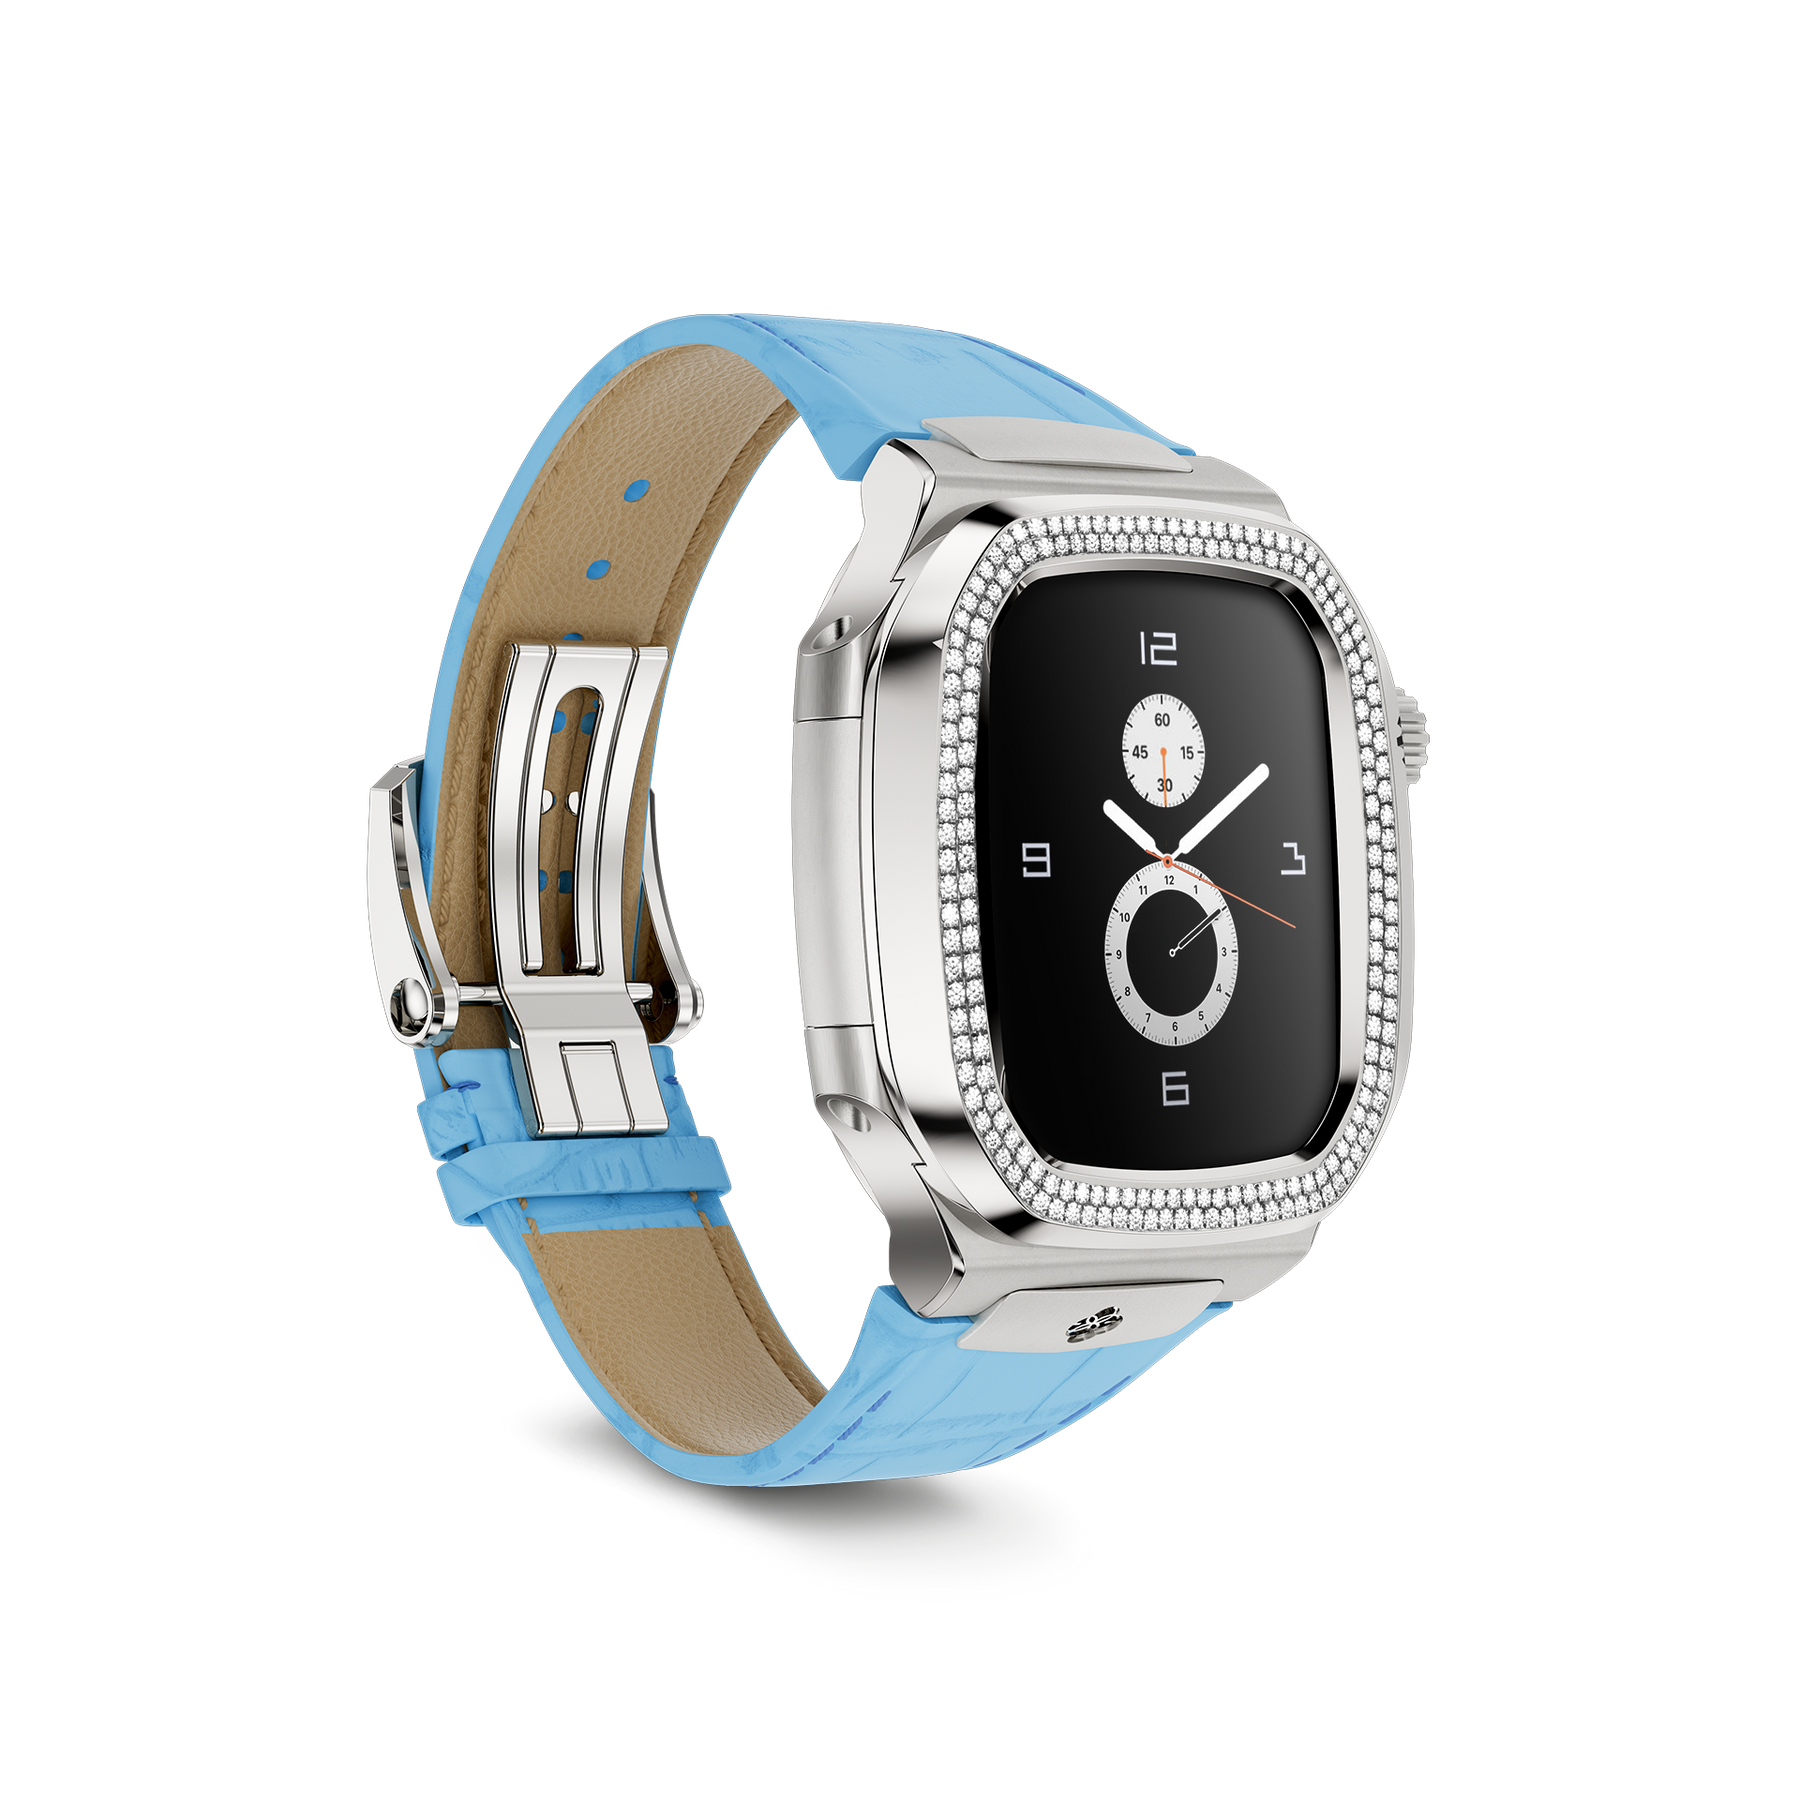 Apple Watch Case ROL41 - Silver MD